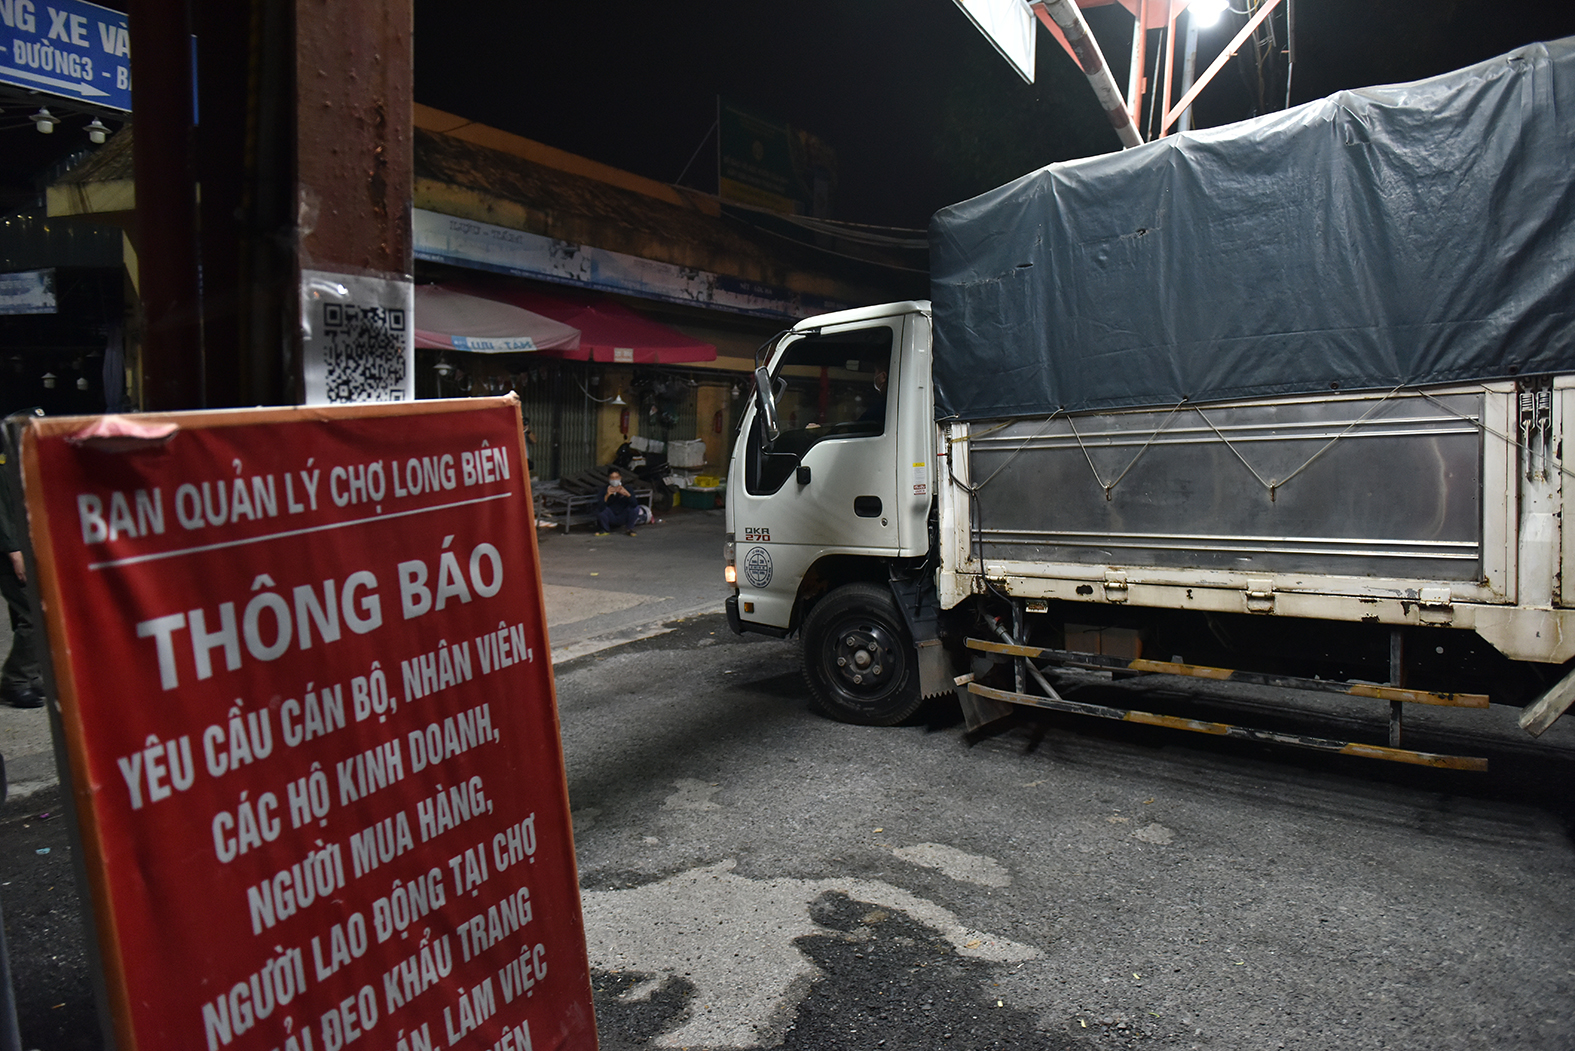 Chợ Long Biên bị đóng cửa từ ngày 3/8 do xuất hiện một tiểu thương bán hải sản dương tính với SARS-CoV-2.